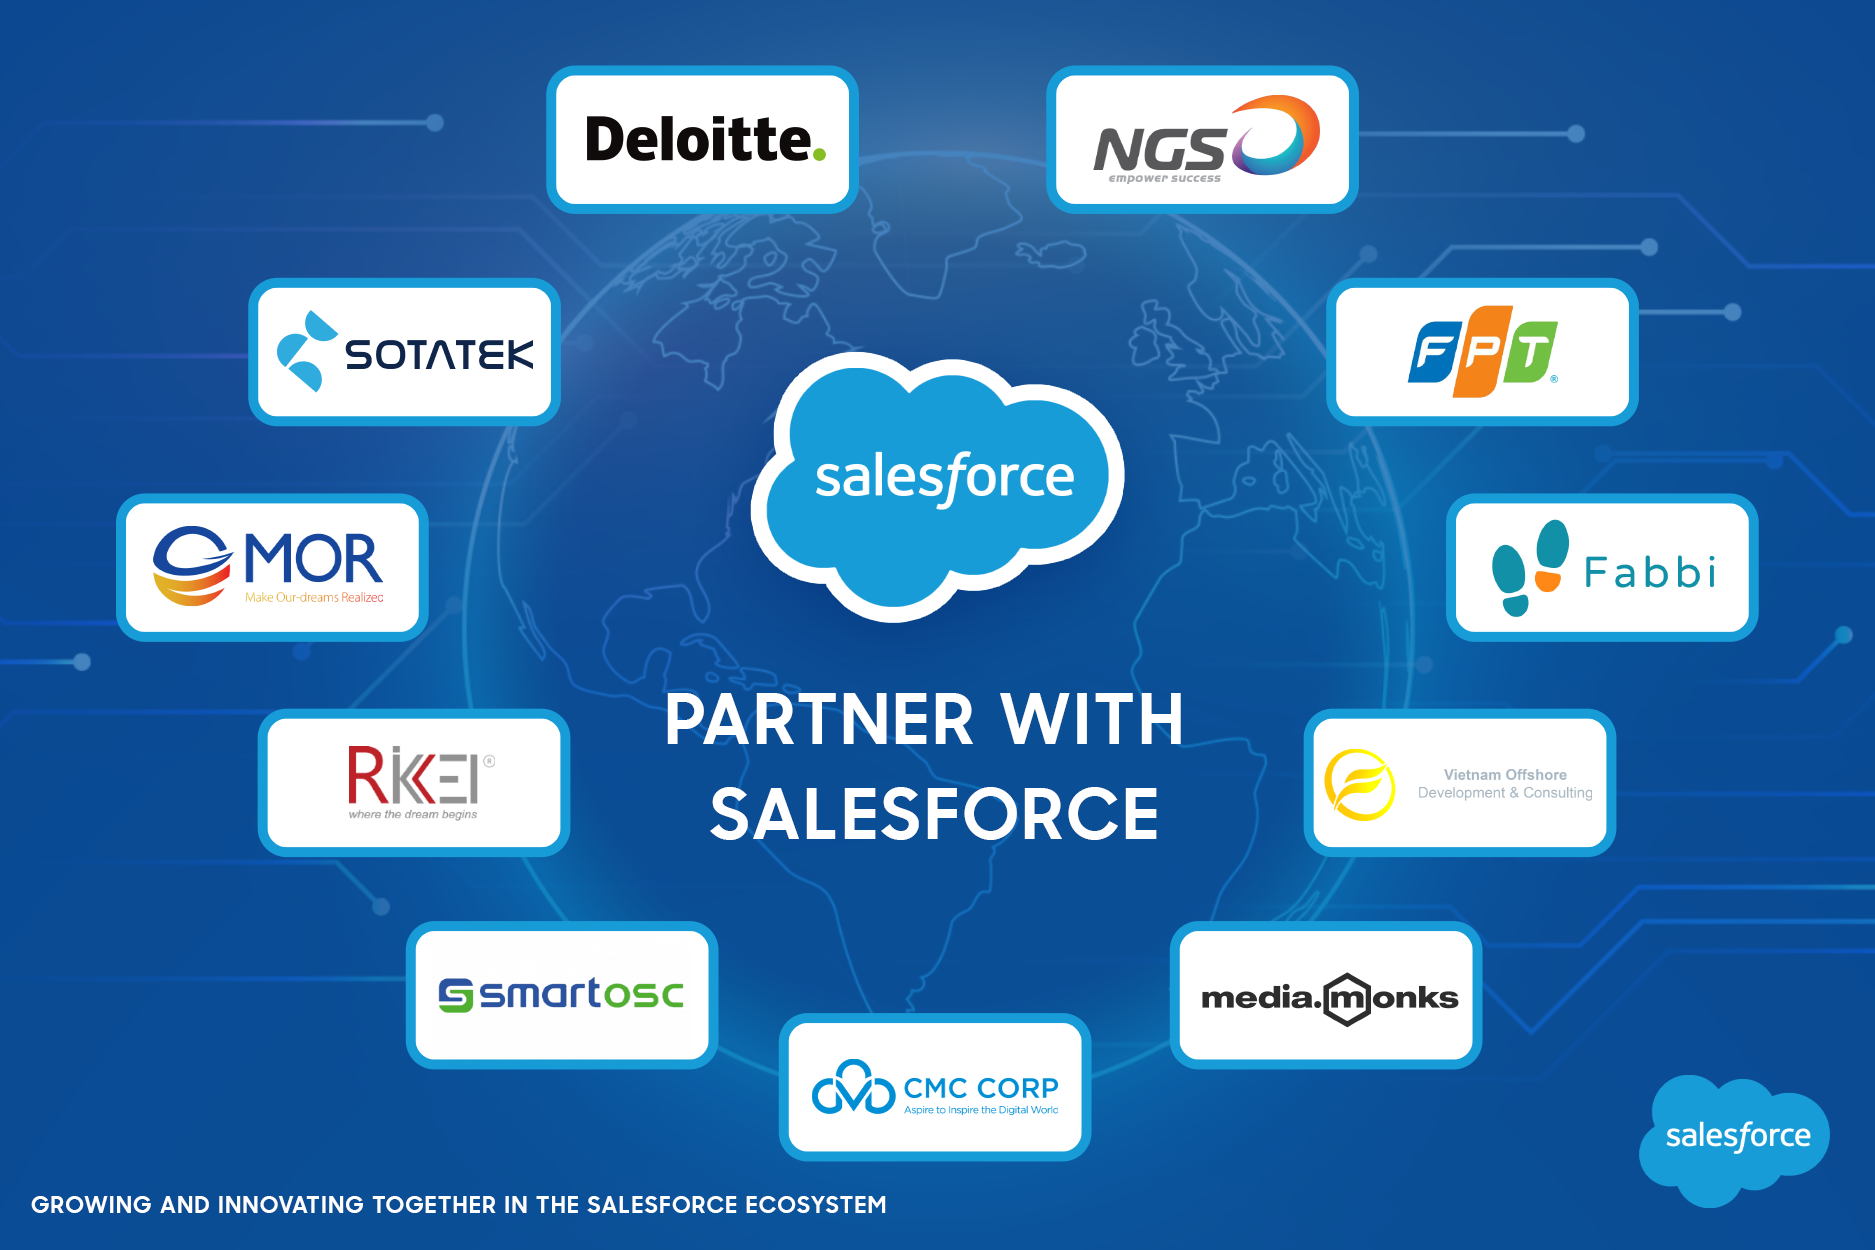 Salesforce's partners in Vietnam